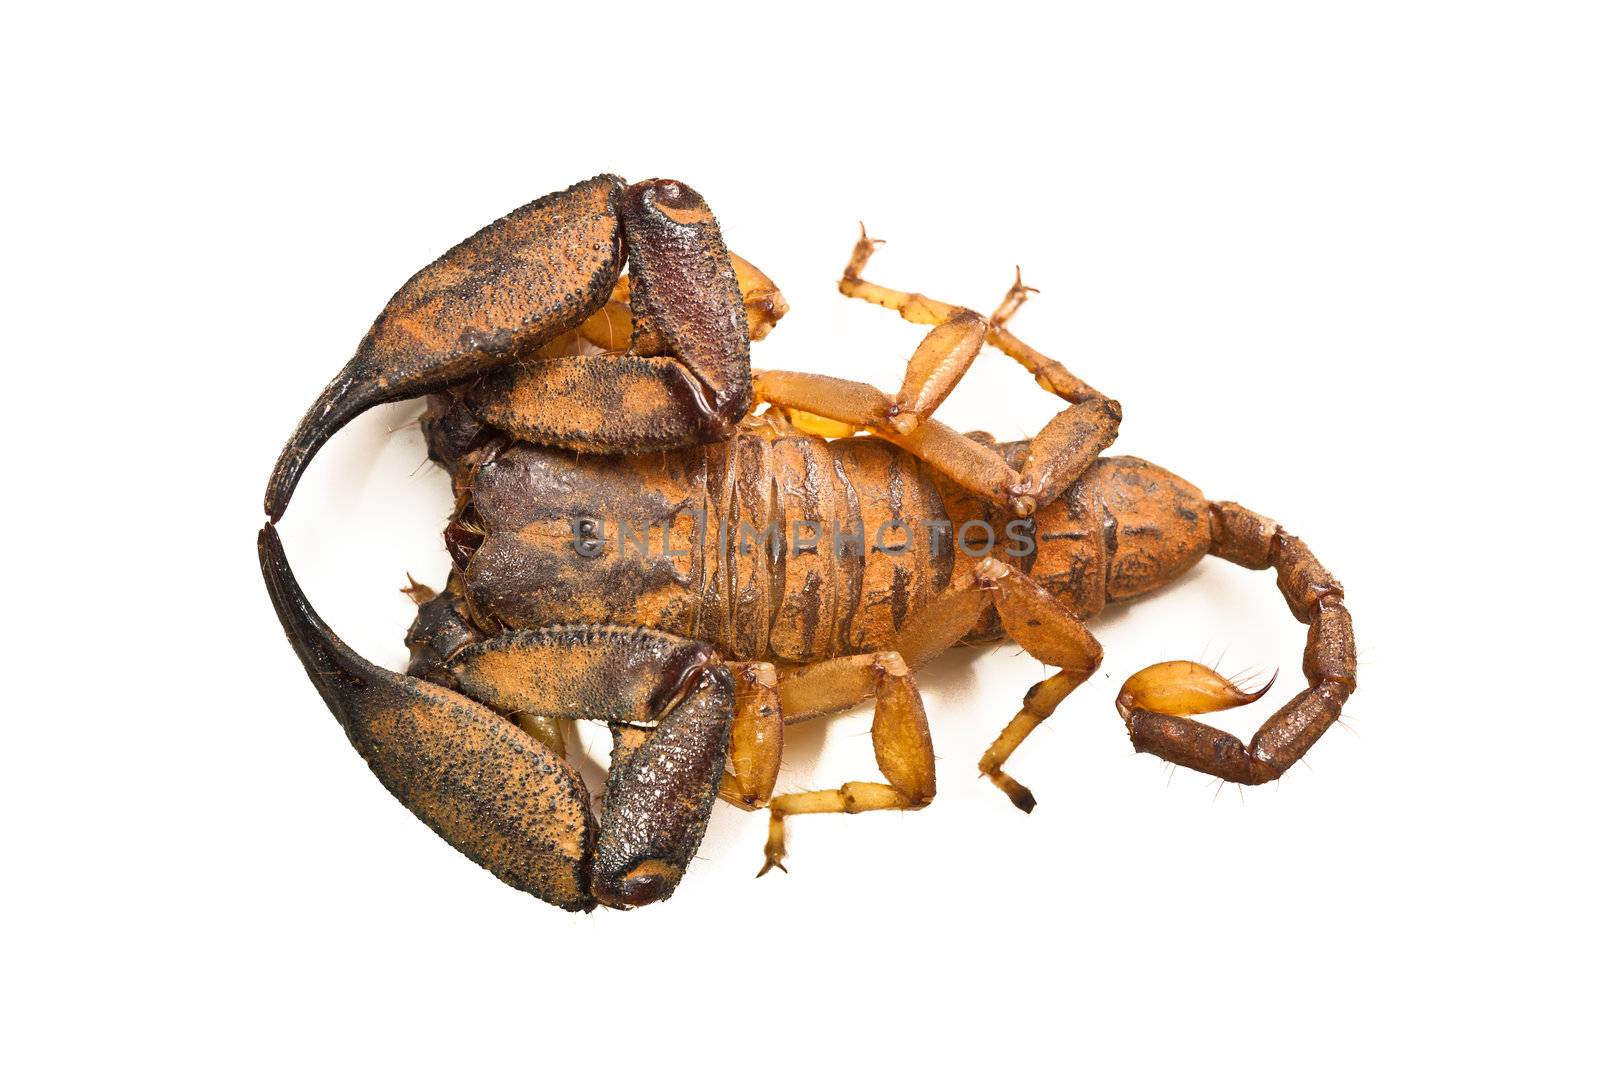 Large australian scorpion by Jaykayl